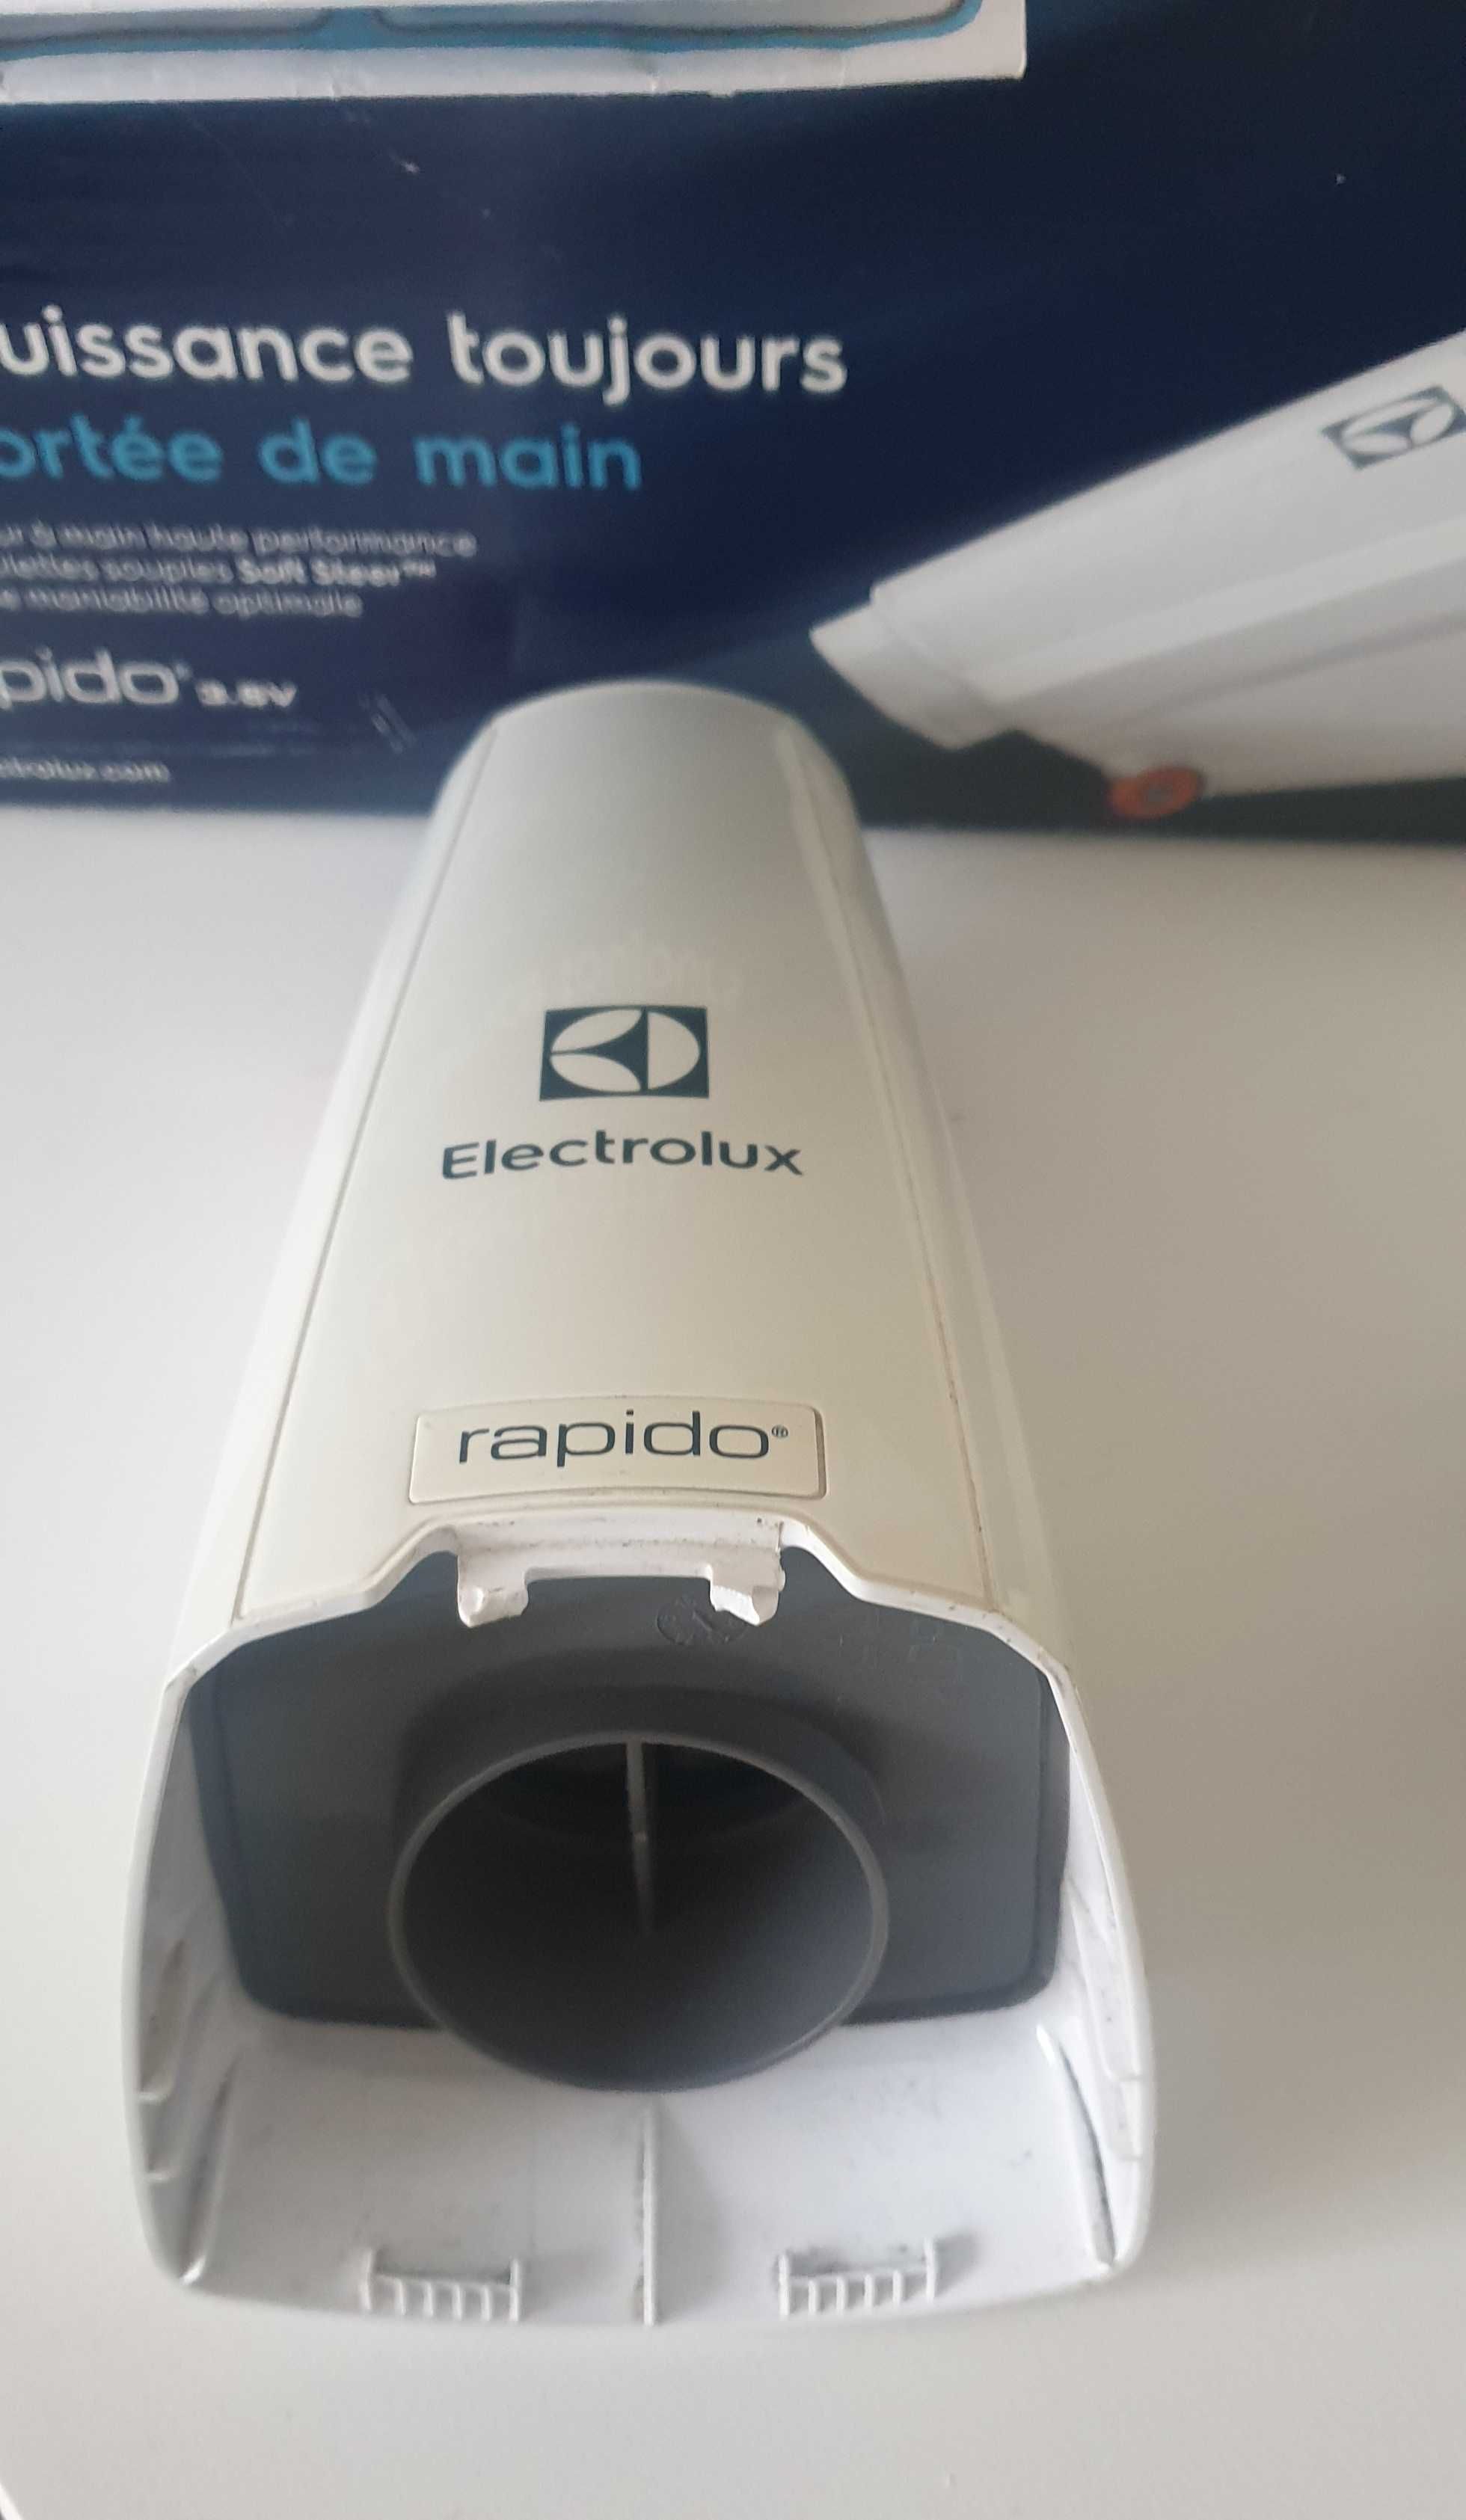 Odkuzacz Elektrolux Rapido zb5003w+ Gratis..